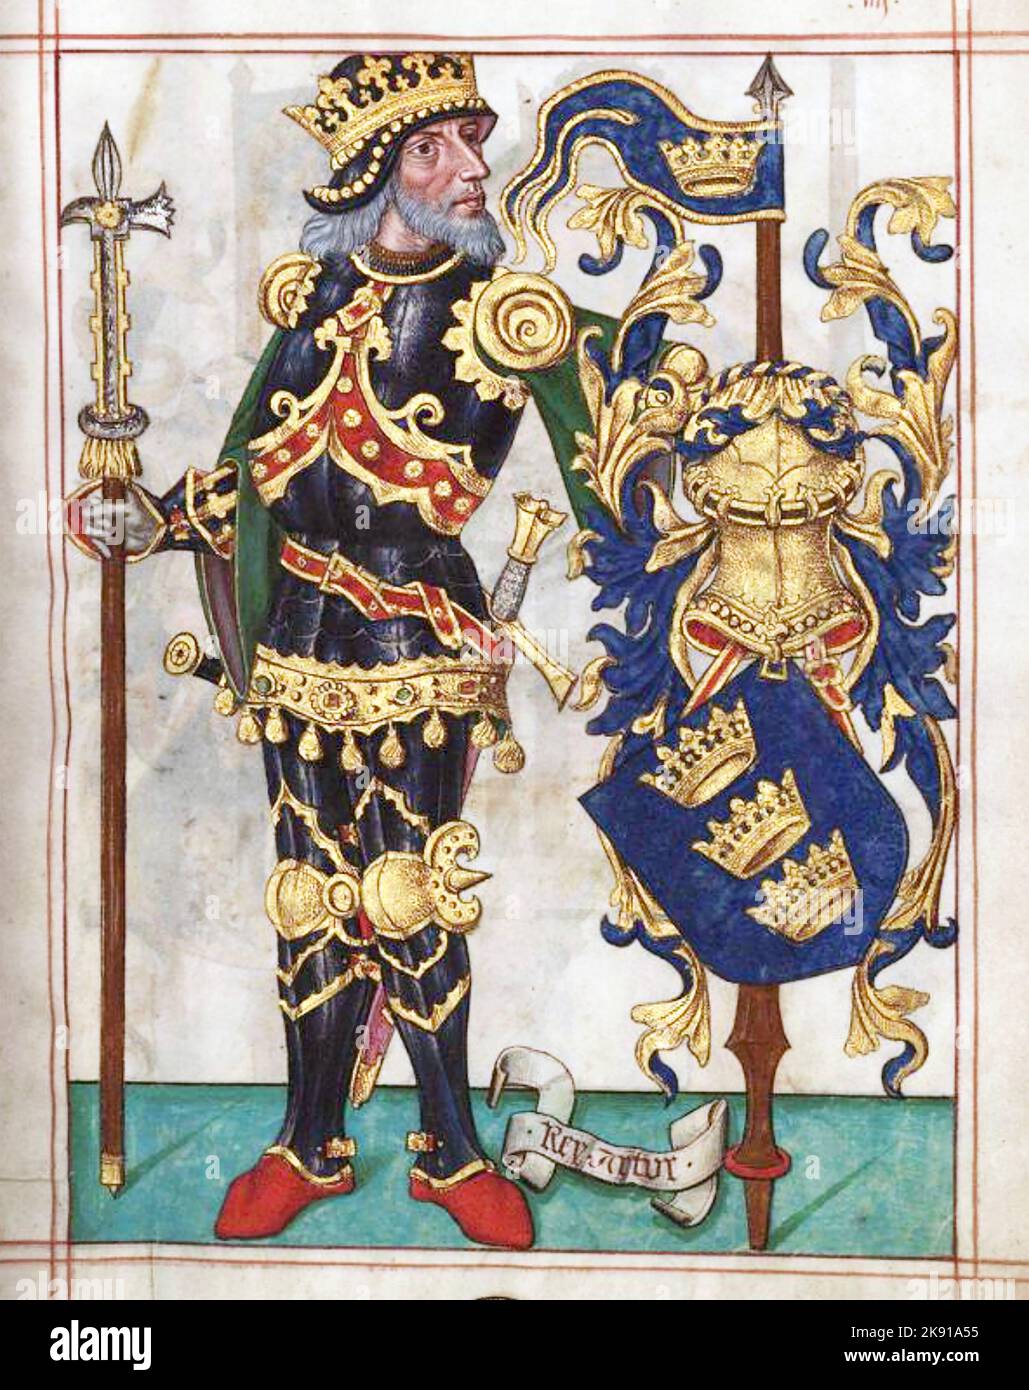 KÖNIG ARTHUR, wie im portugiesischen Buch der heraldischen Würdenträger Livro do Armero-Mor aus dem Jahr 1509 dargestellt Stockfoto